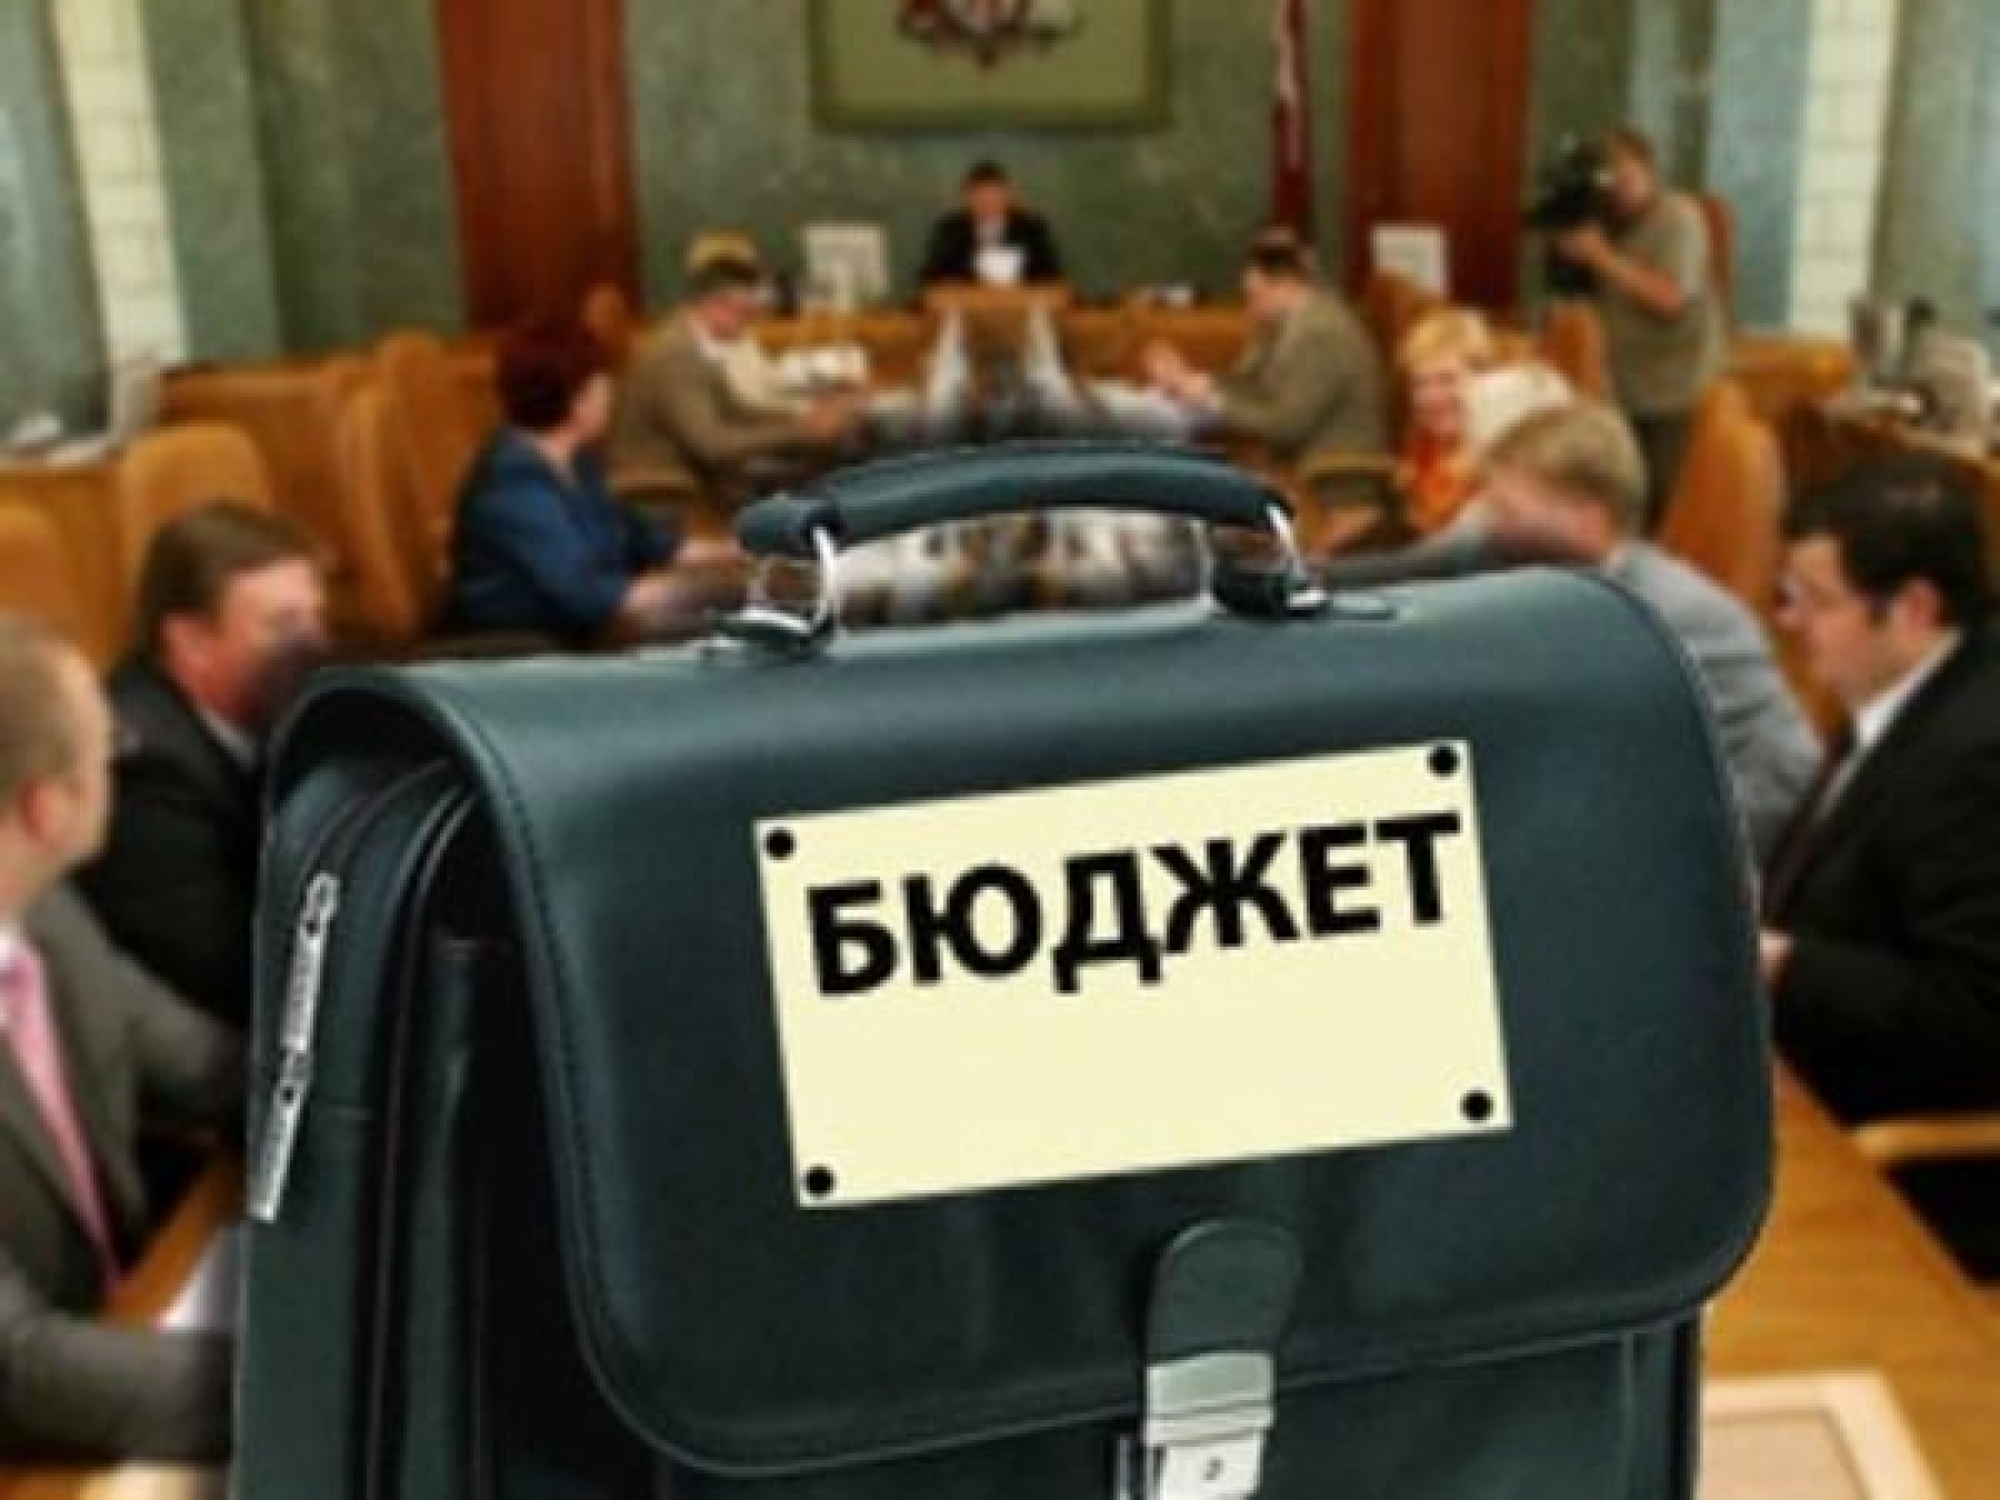 Кабінет міністрів України пропонує Верховній Раді прийняти проект державного бюджету на 2016 рік з дефіцитом 3,7% ВВП, що в абсолютних цифрах становить 84 млрд грн.
